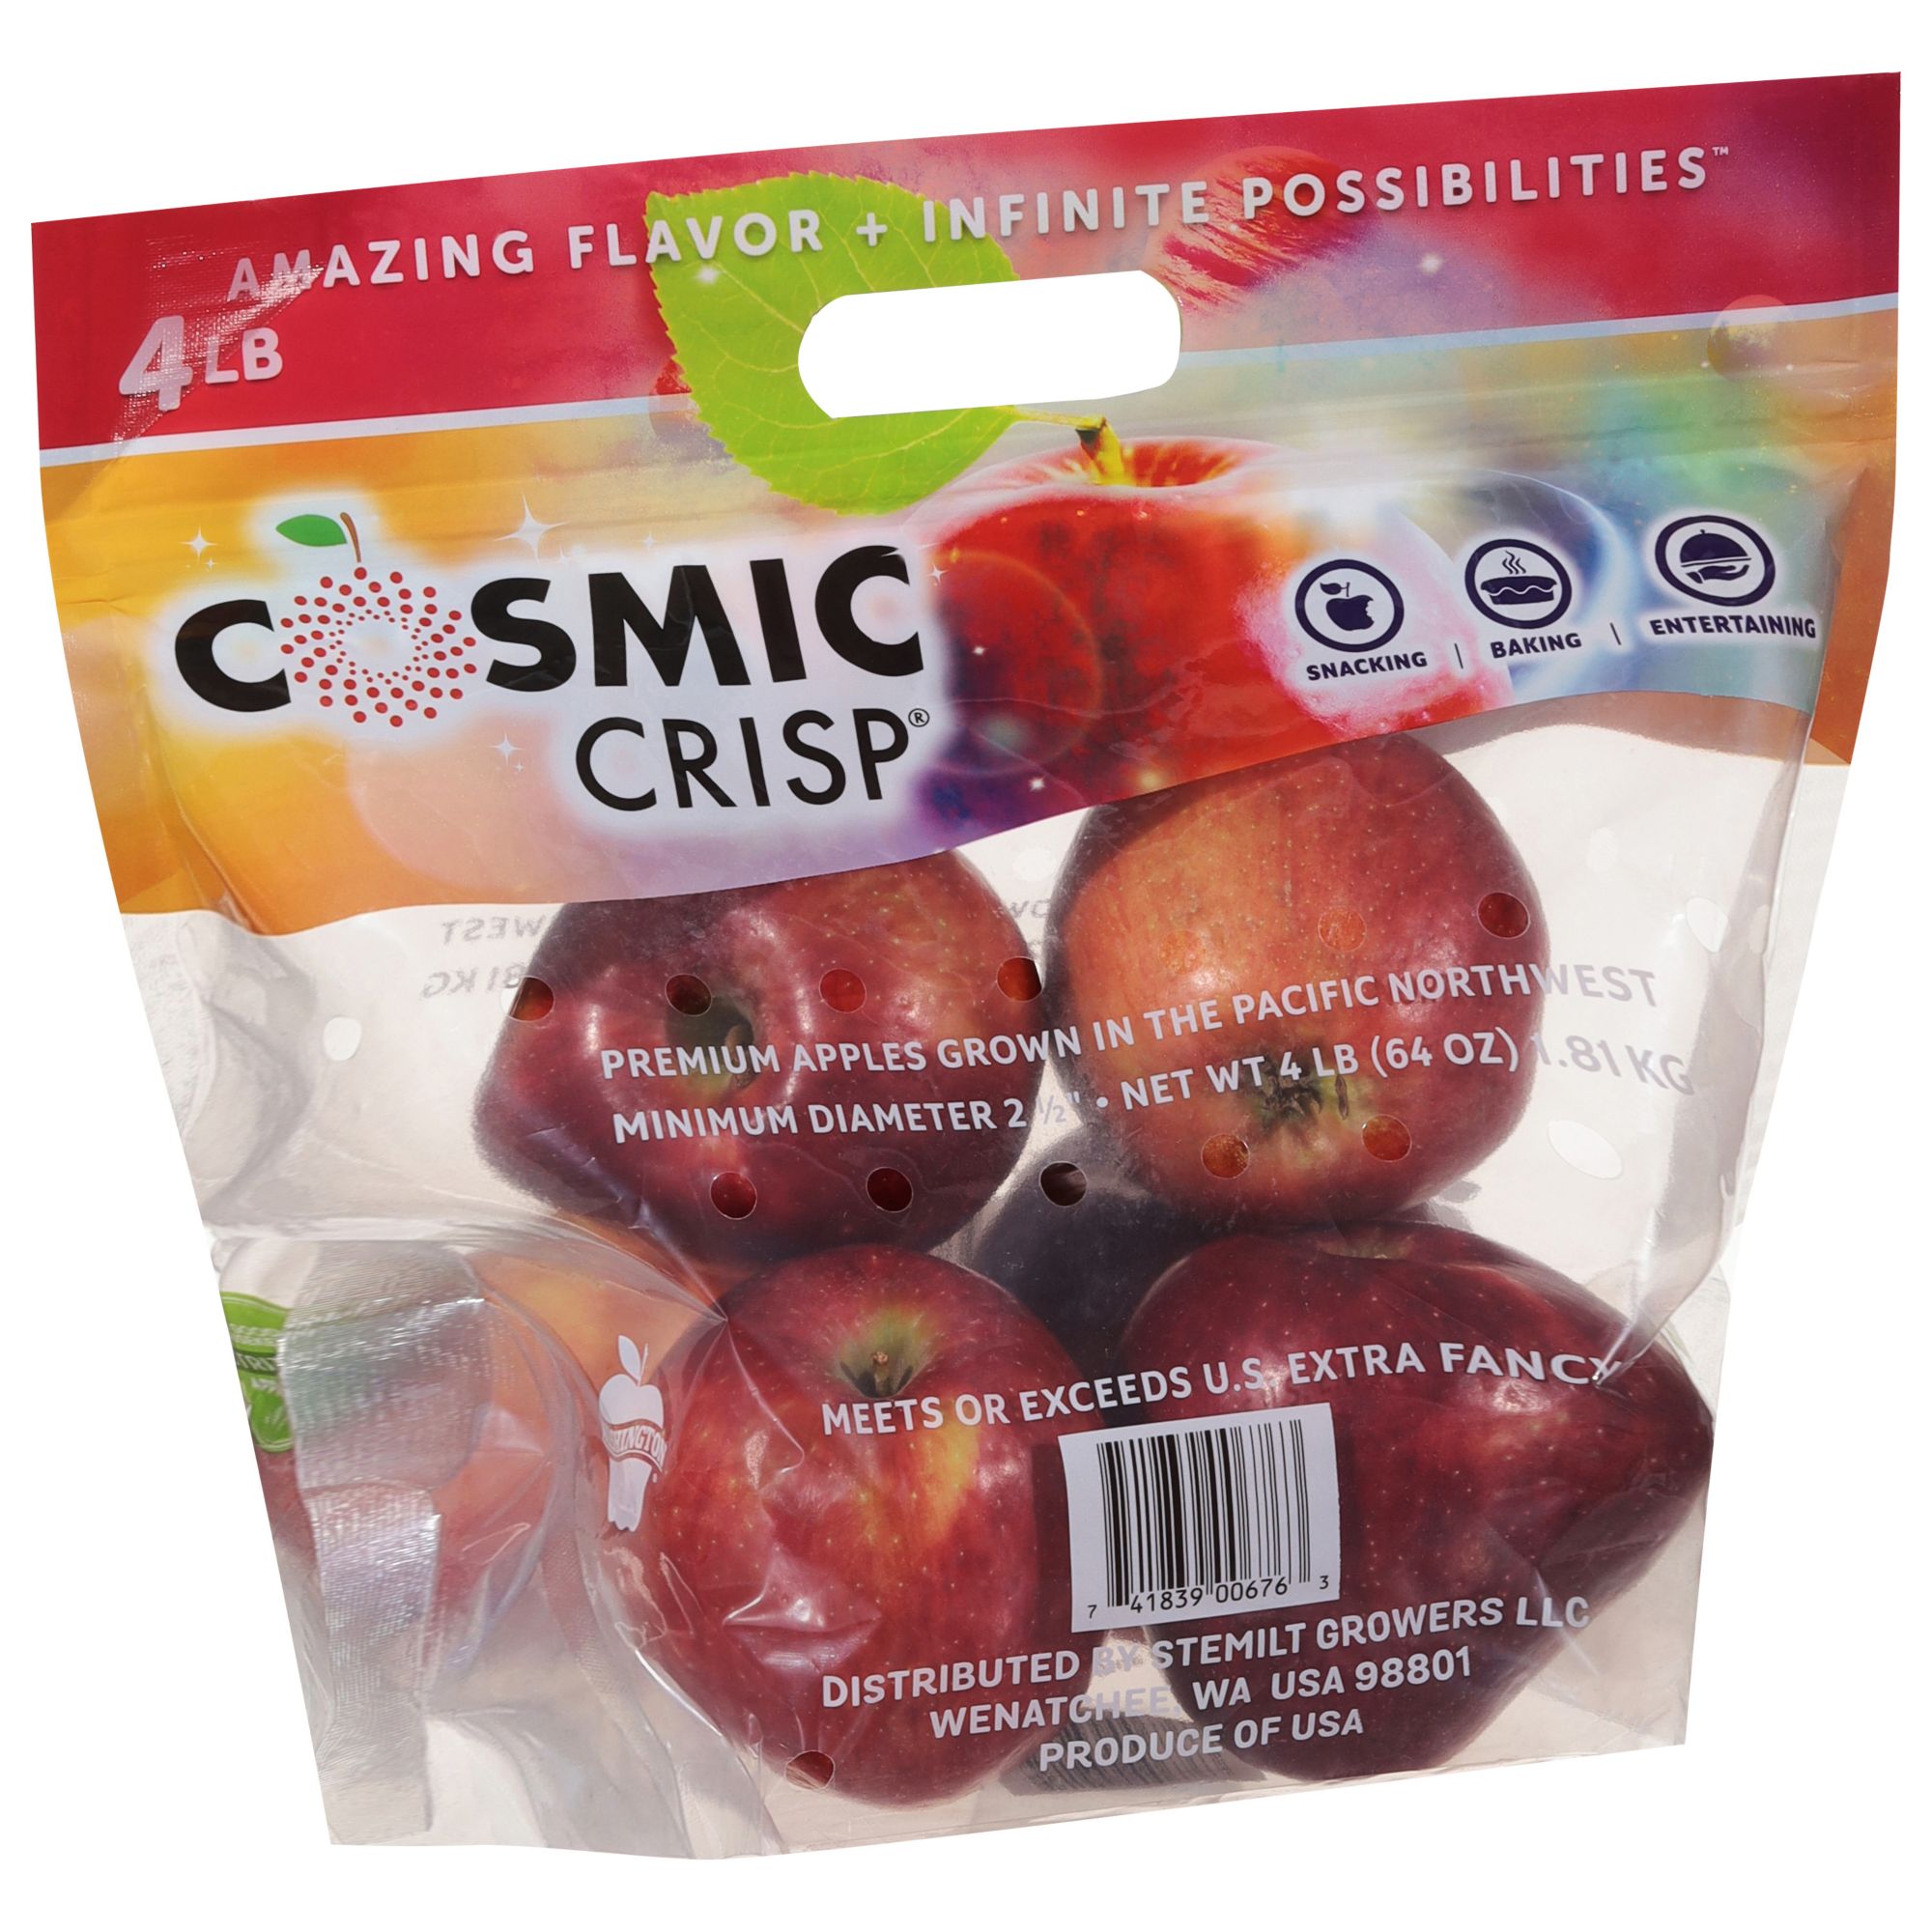 Cosmic Crisp Apples, 2 lbs - NSHF